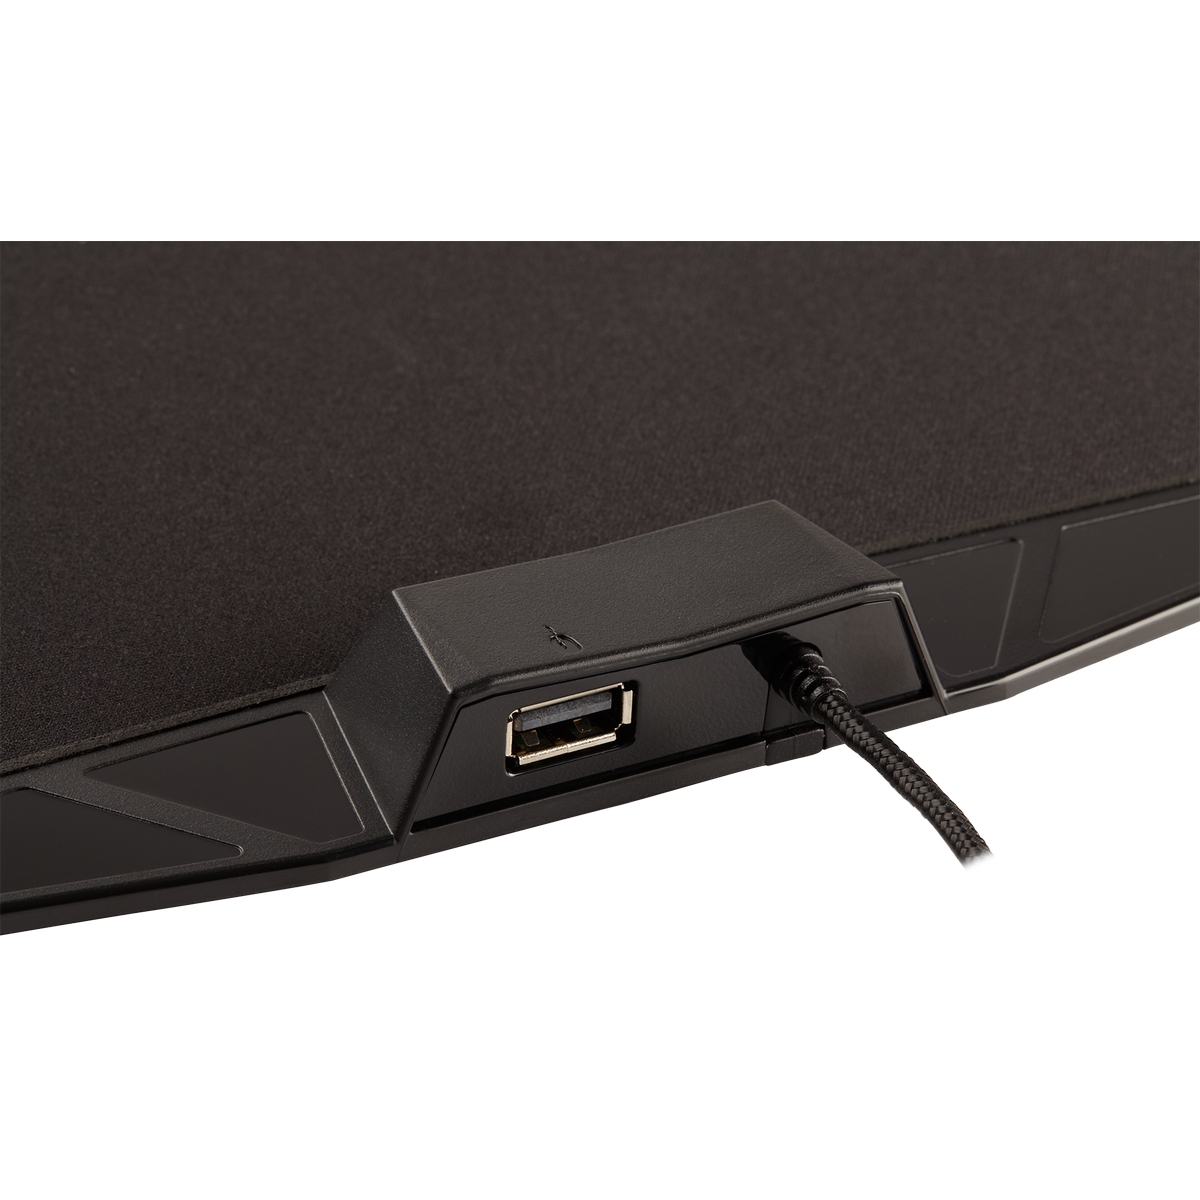 CORSAIR - Corsair Gaming MM800C RGB POLARIS Cloth Edition Mouse Pad (CH-9440021-EU)